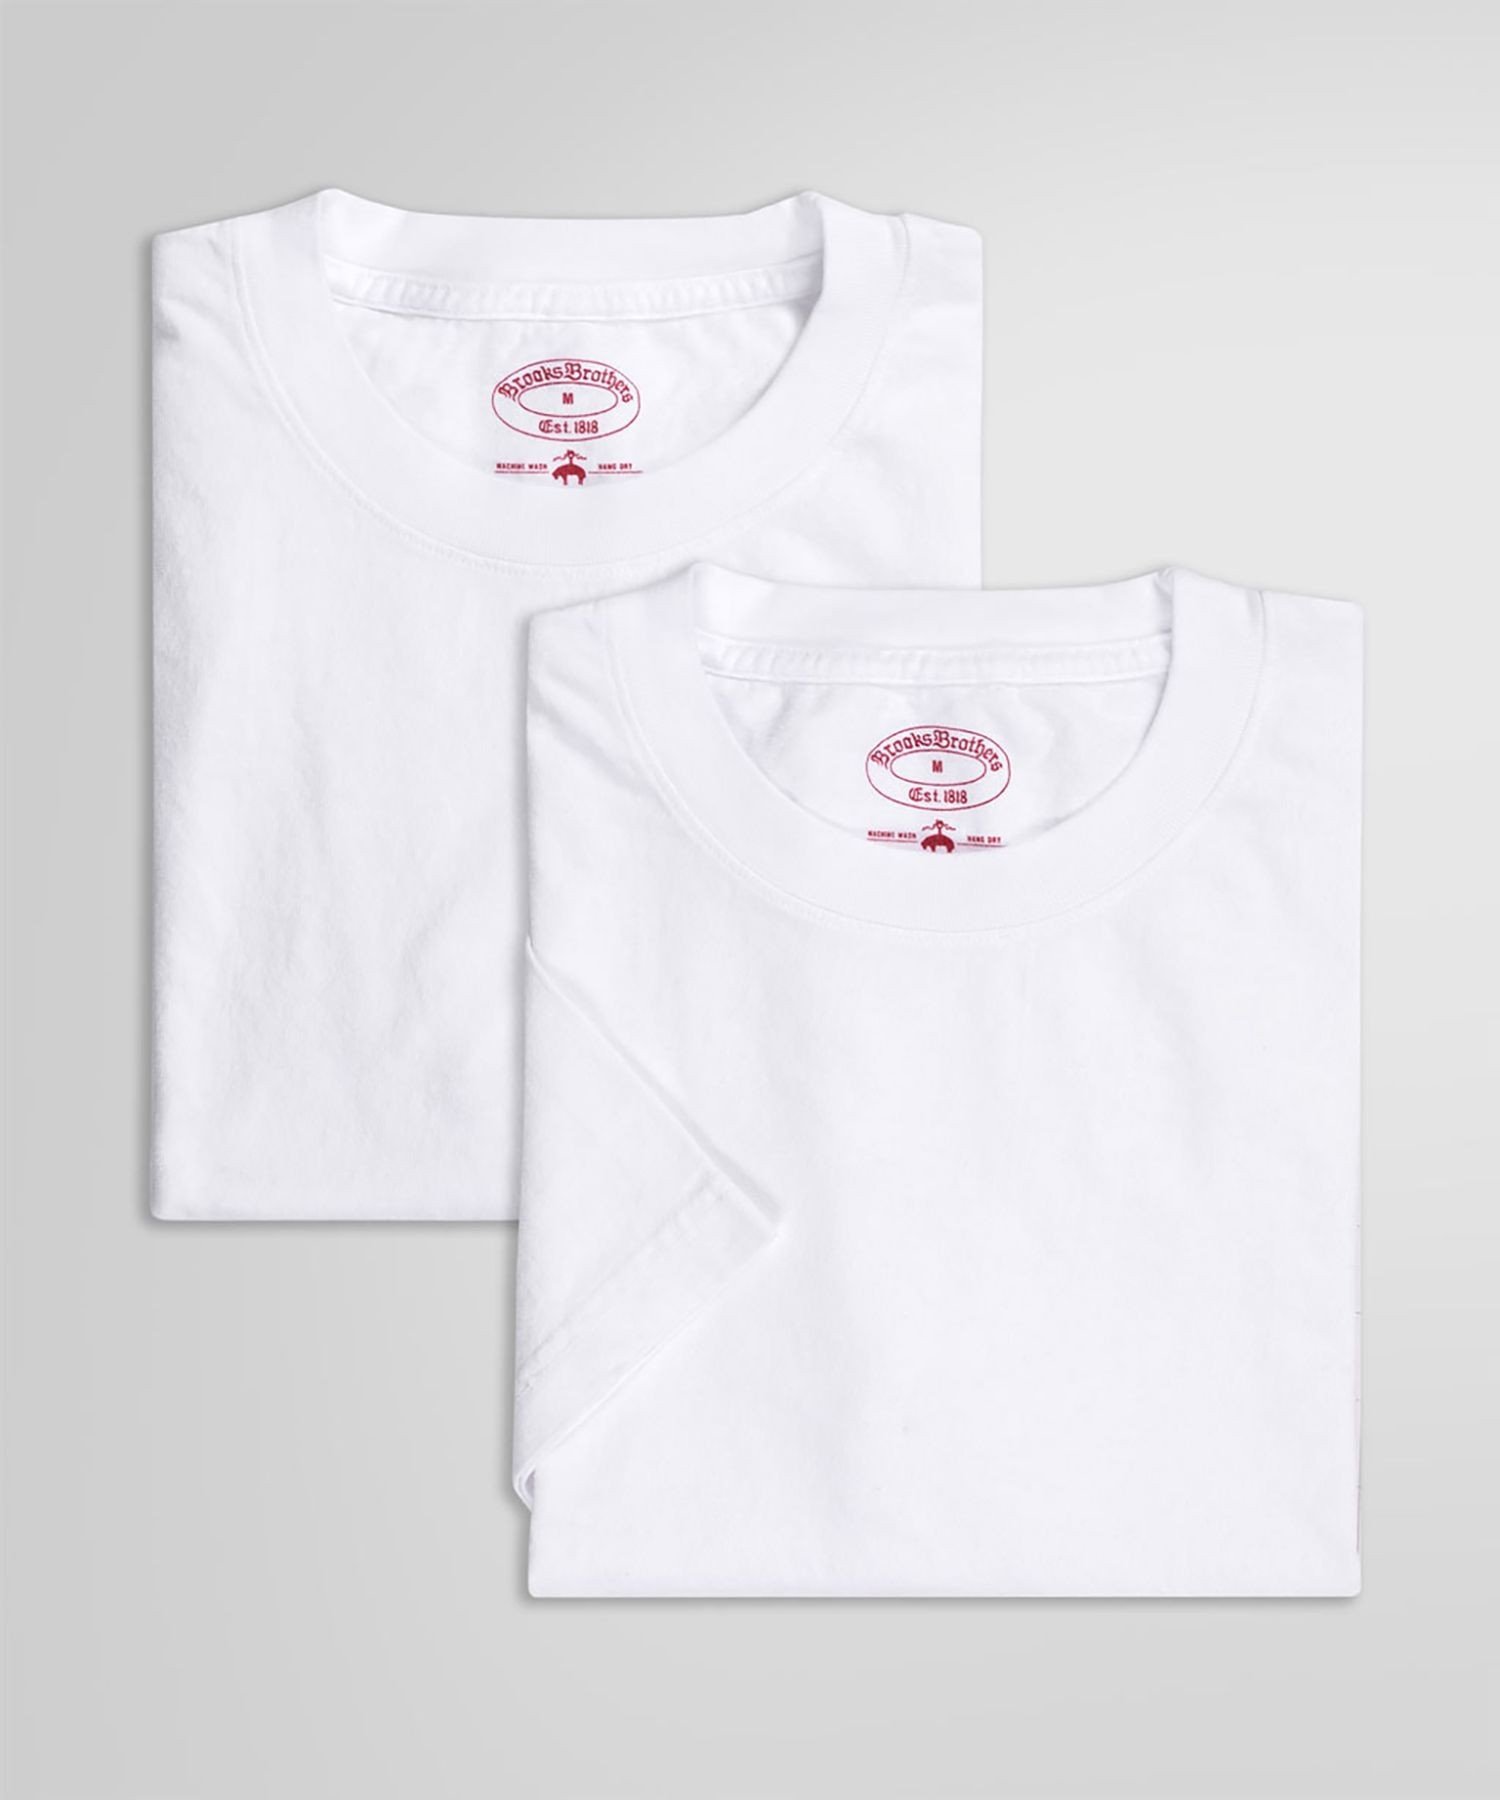 BROOKS BROTHERS コットン 2パック クルーネック Tシャツ Made in USA ブルックス ブラザーズ トップス カットソー・Tシャツ ホワイト ブラック ネイビー【送料無料】